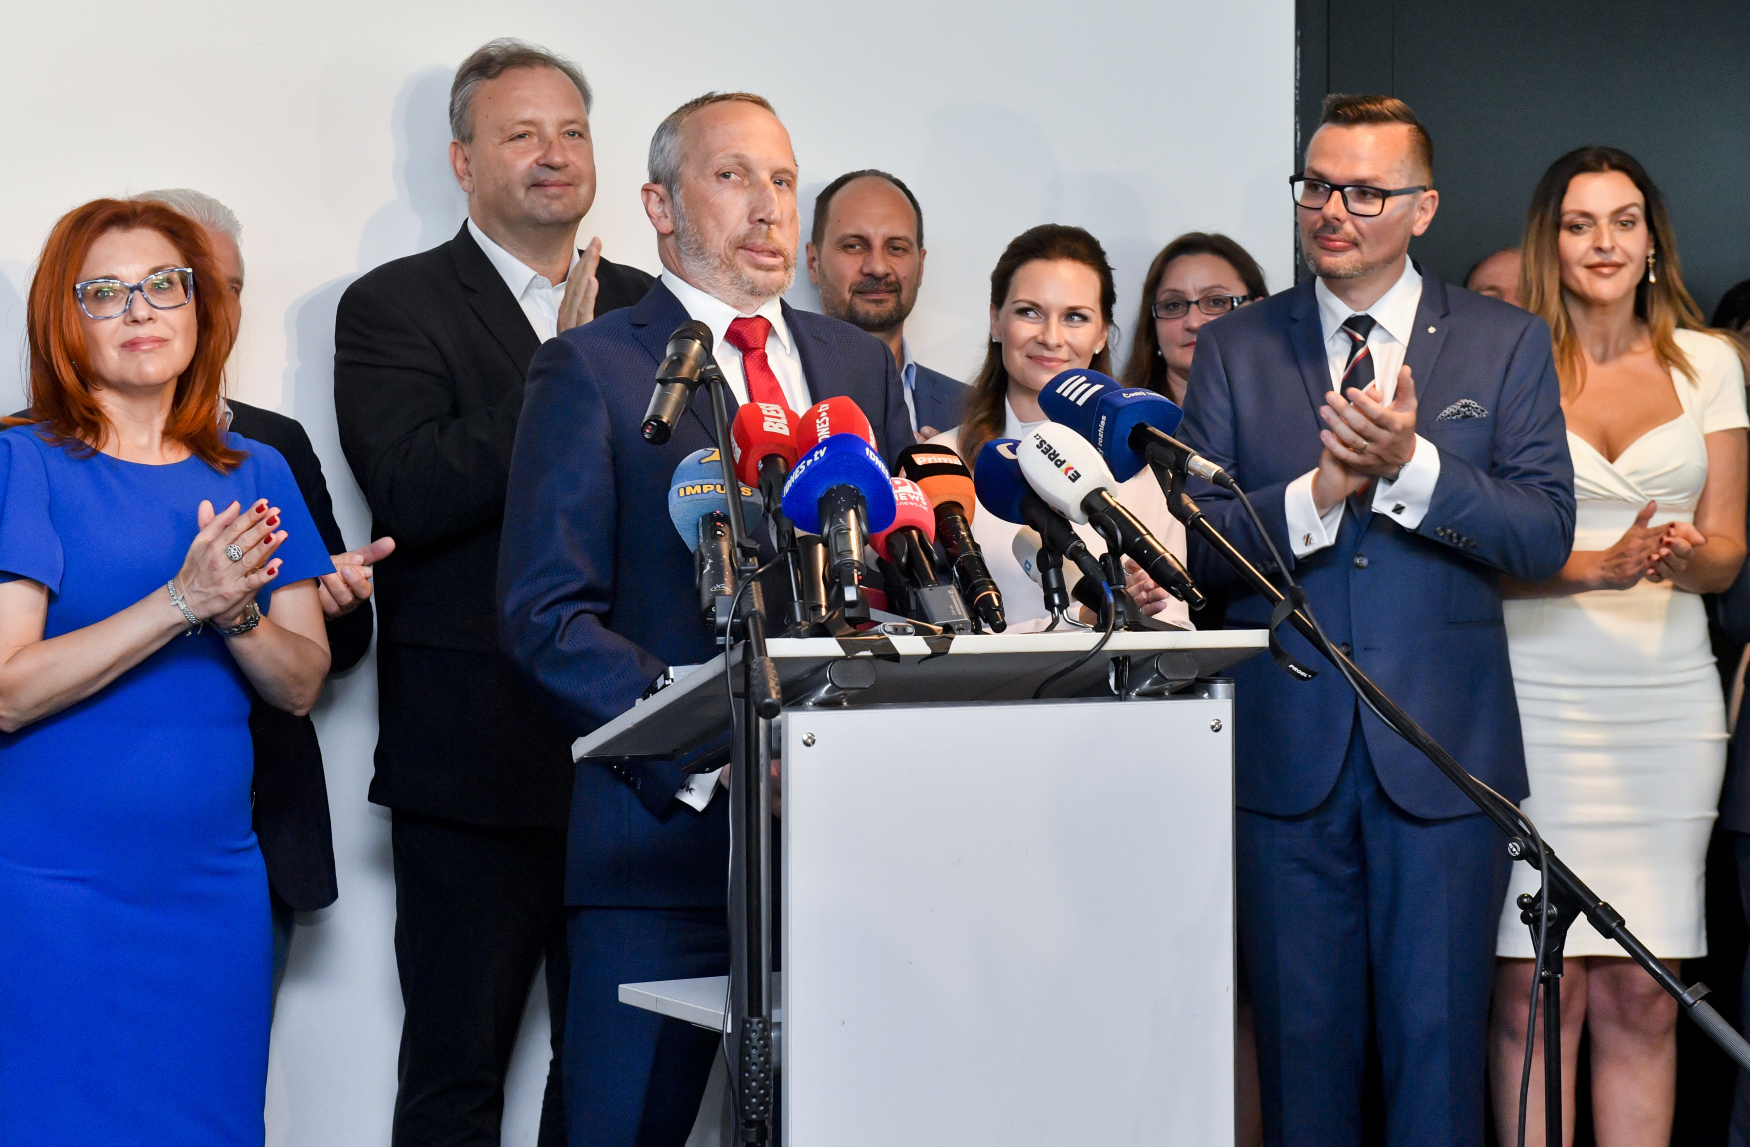 Bývalý poslanec ODS Václav Klaus mladší (třetí zleva) představil svou novou politickou stranu Trikolóra - hnutí občanů